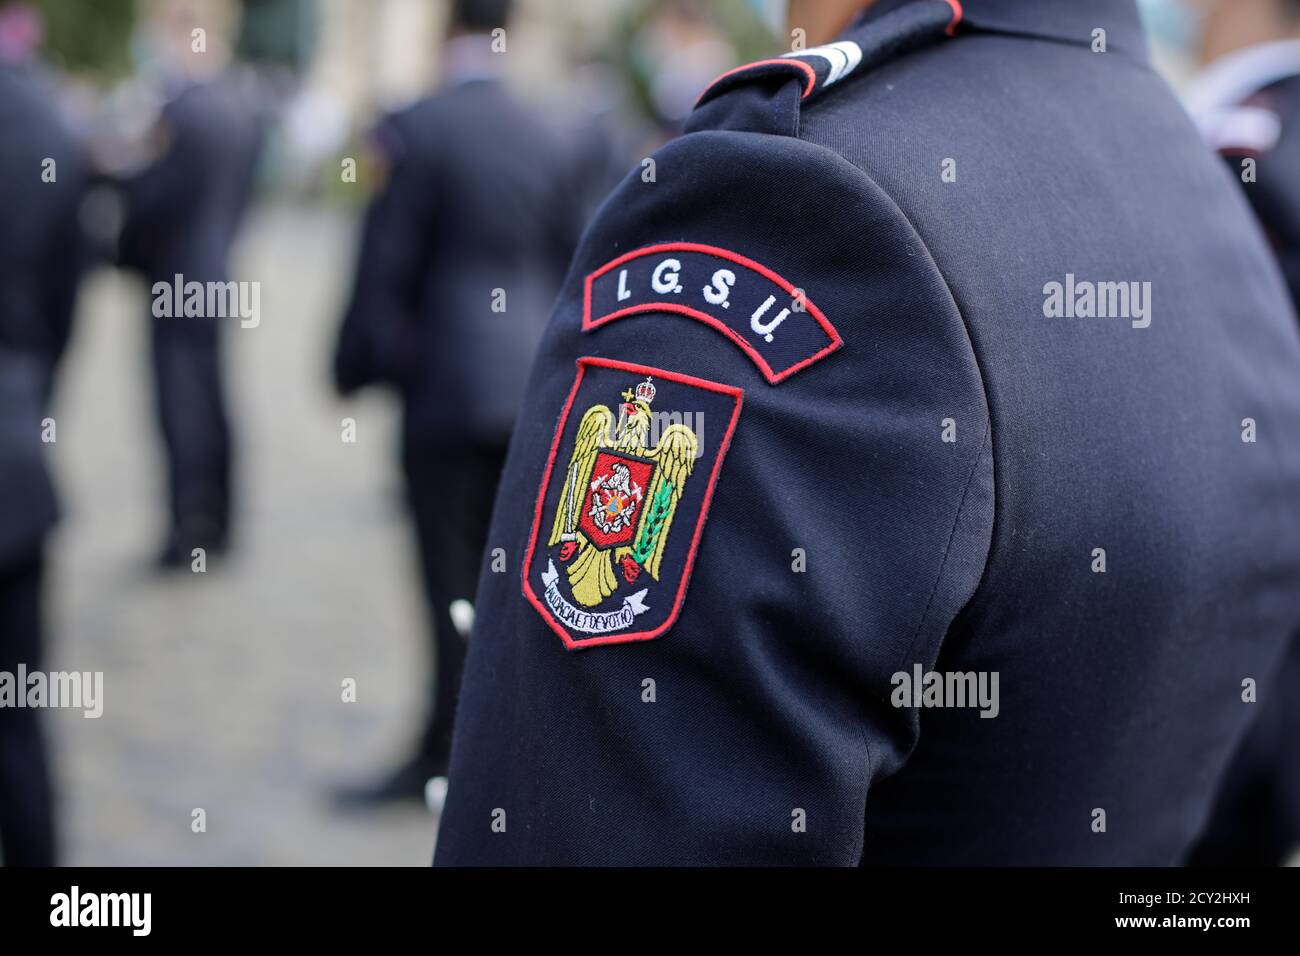 Bukarest, Rumänien - 14. September 2020: Details mit dem Emblem der IGSU (Rumänische Generalinspektion für Notsituationen) auf einer Uniform. Stockfoto